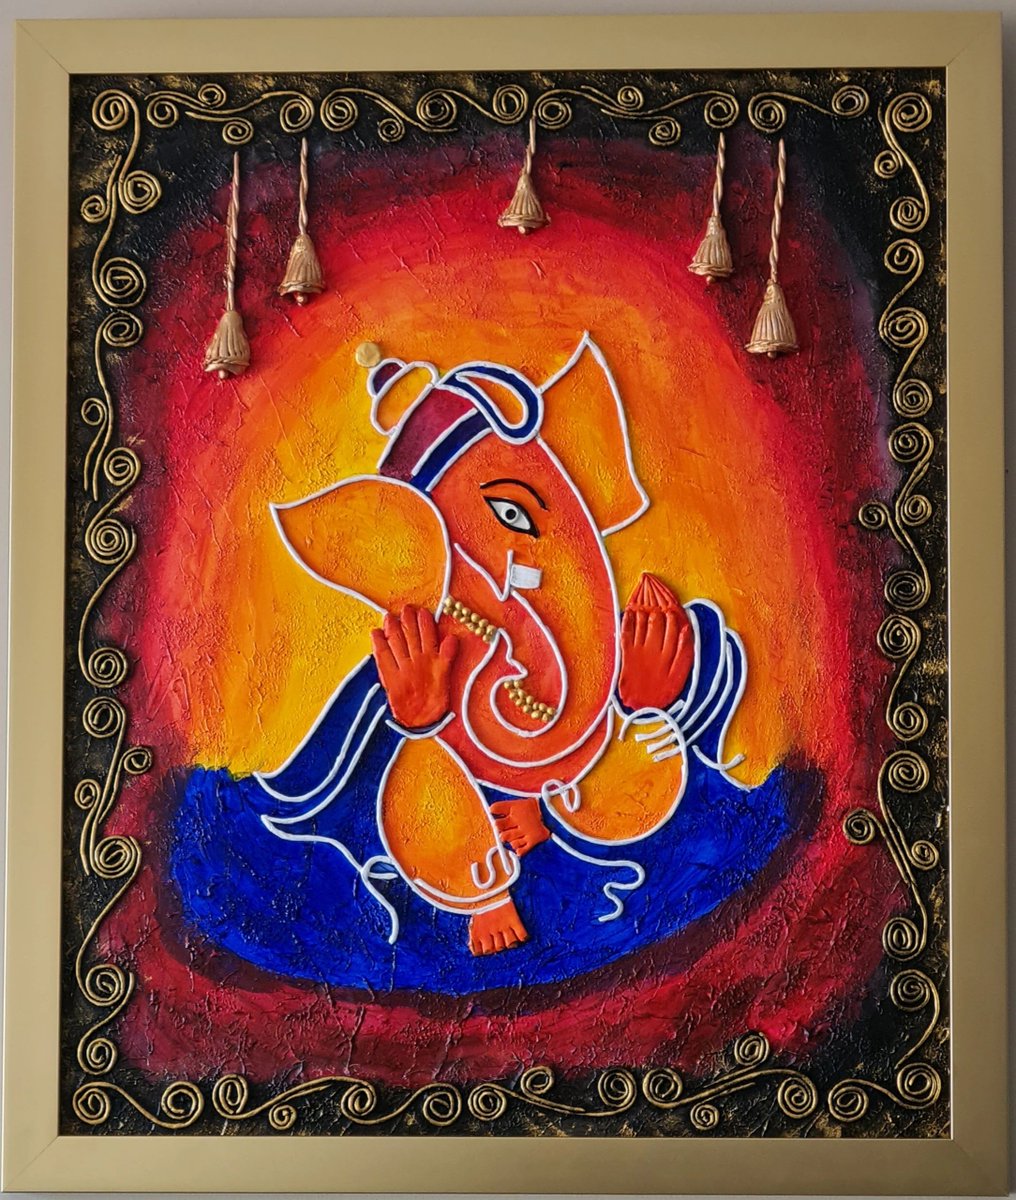 Lord Ganesha by Anu
#Ganesha #Acrylic #mixmedia #homedecor #giftitem #positivity #interiordesign #interiordecorating #buylocalart #interior2you #supportsmallbusiness #interiorstyling #interiordesigner #homeinspo #decor #ideasforhome #myroom #mydecor